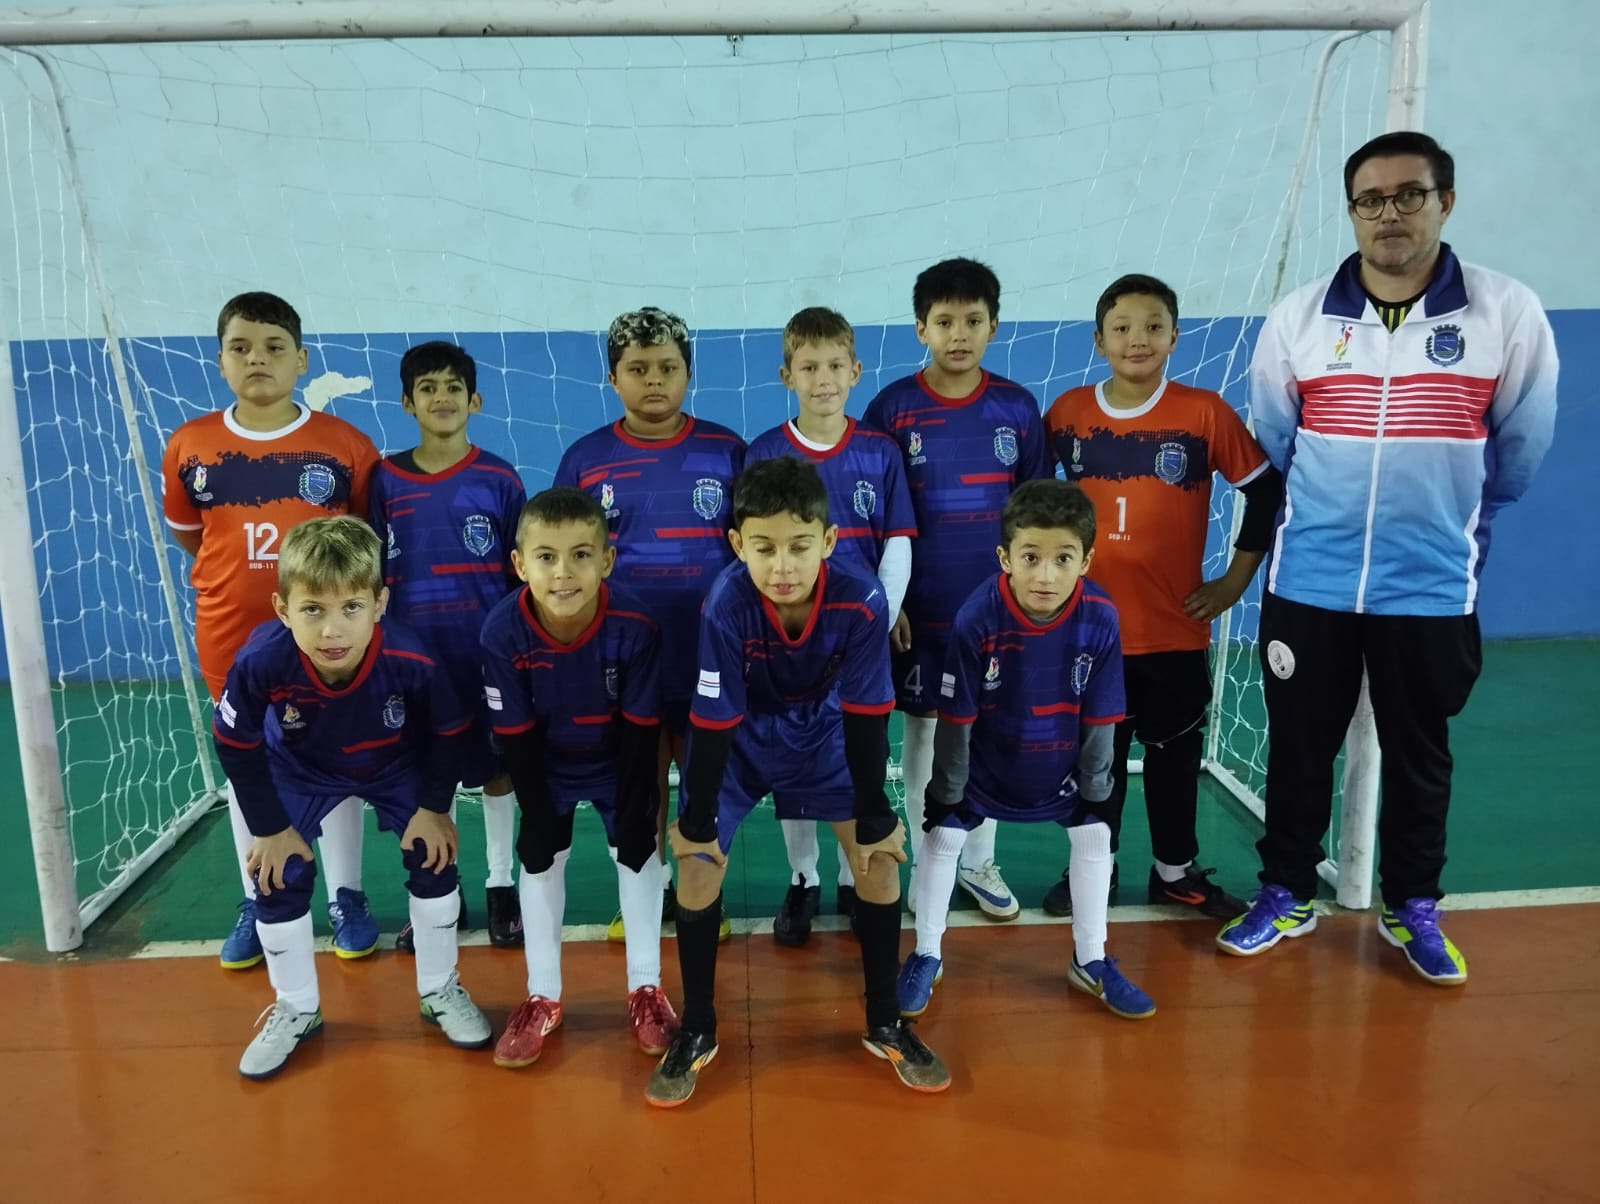 Uma Grande festa marca a abertura do Municipal de Futsal Menores